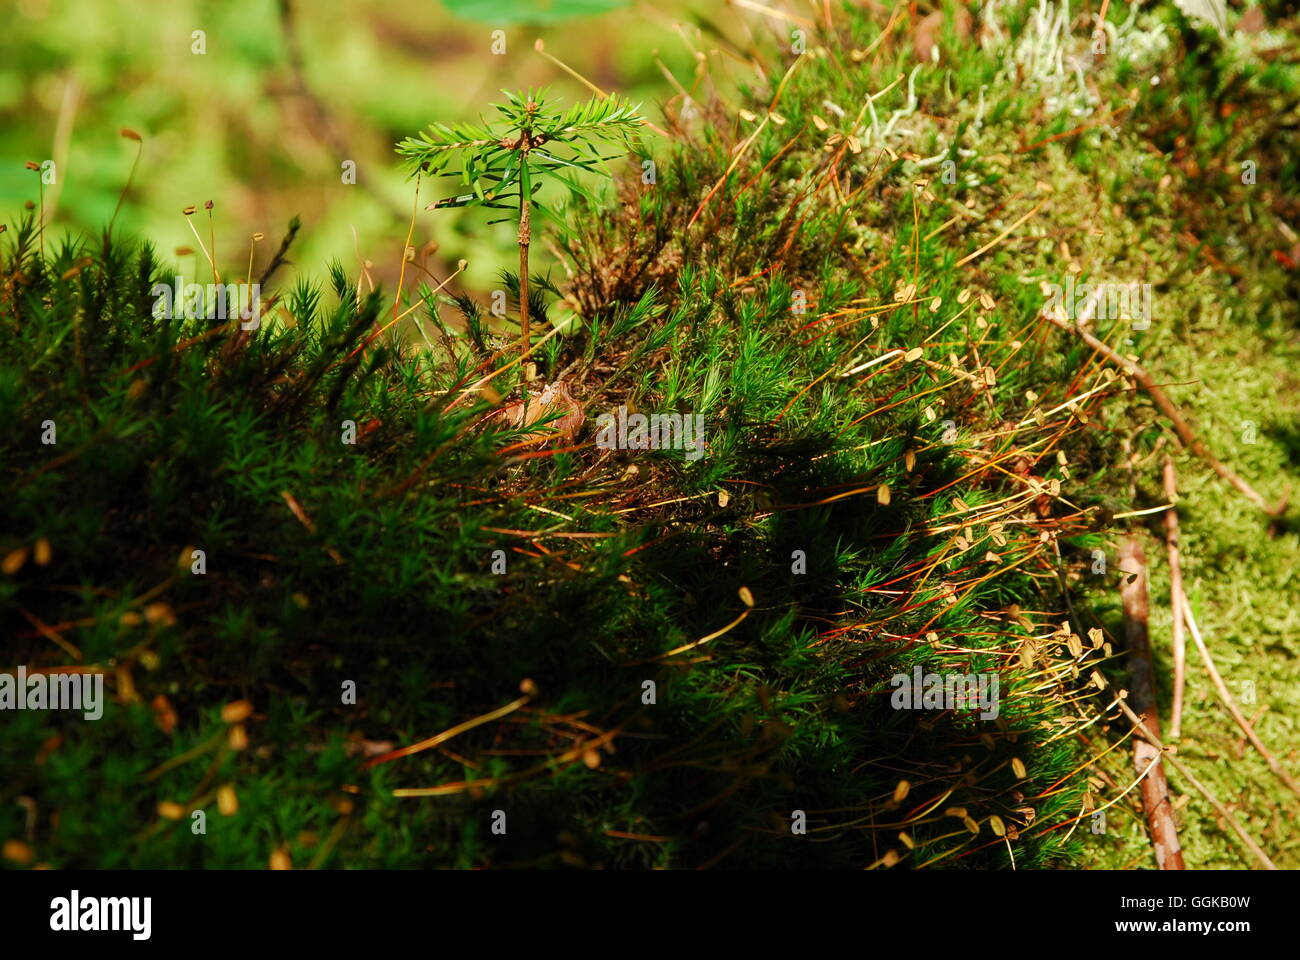 Verde musgo, bryophyta Foto de stock